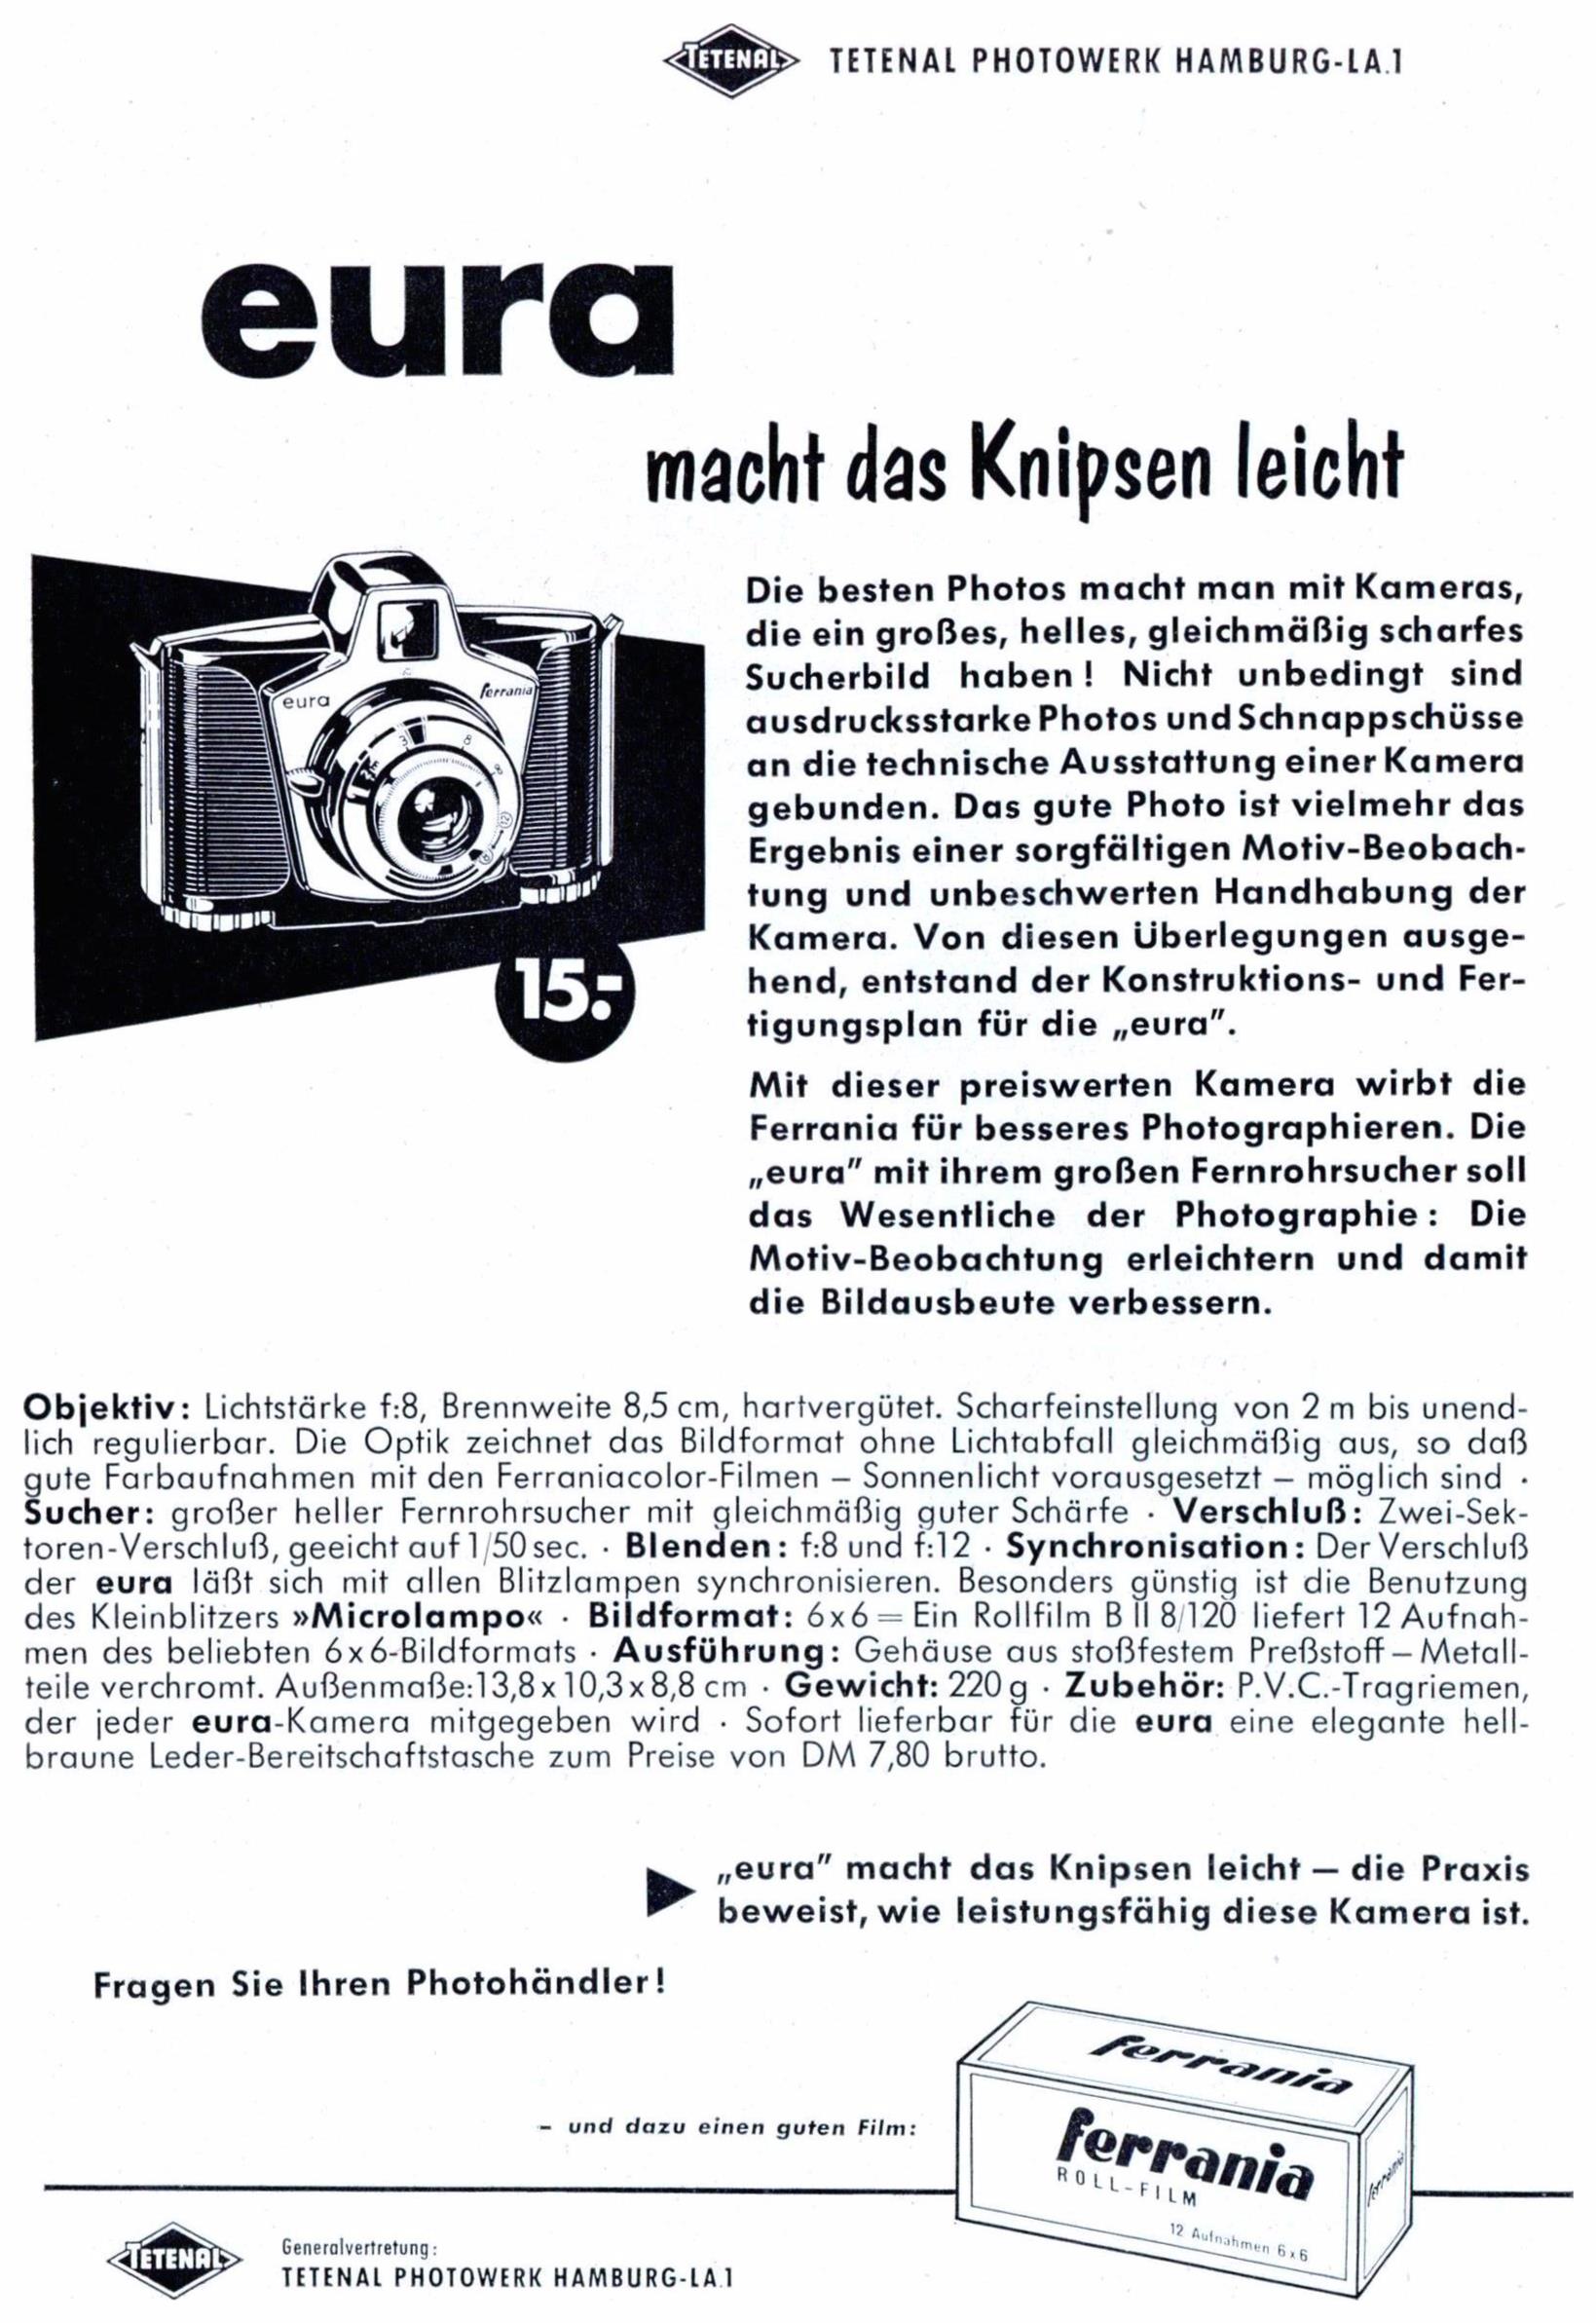 Eura 1959 0.jpg